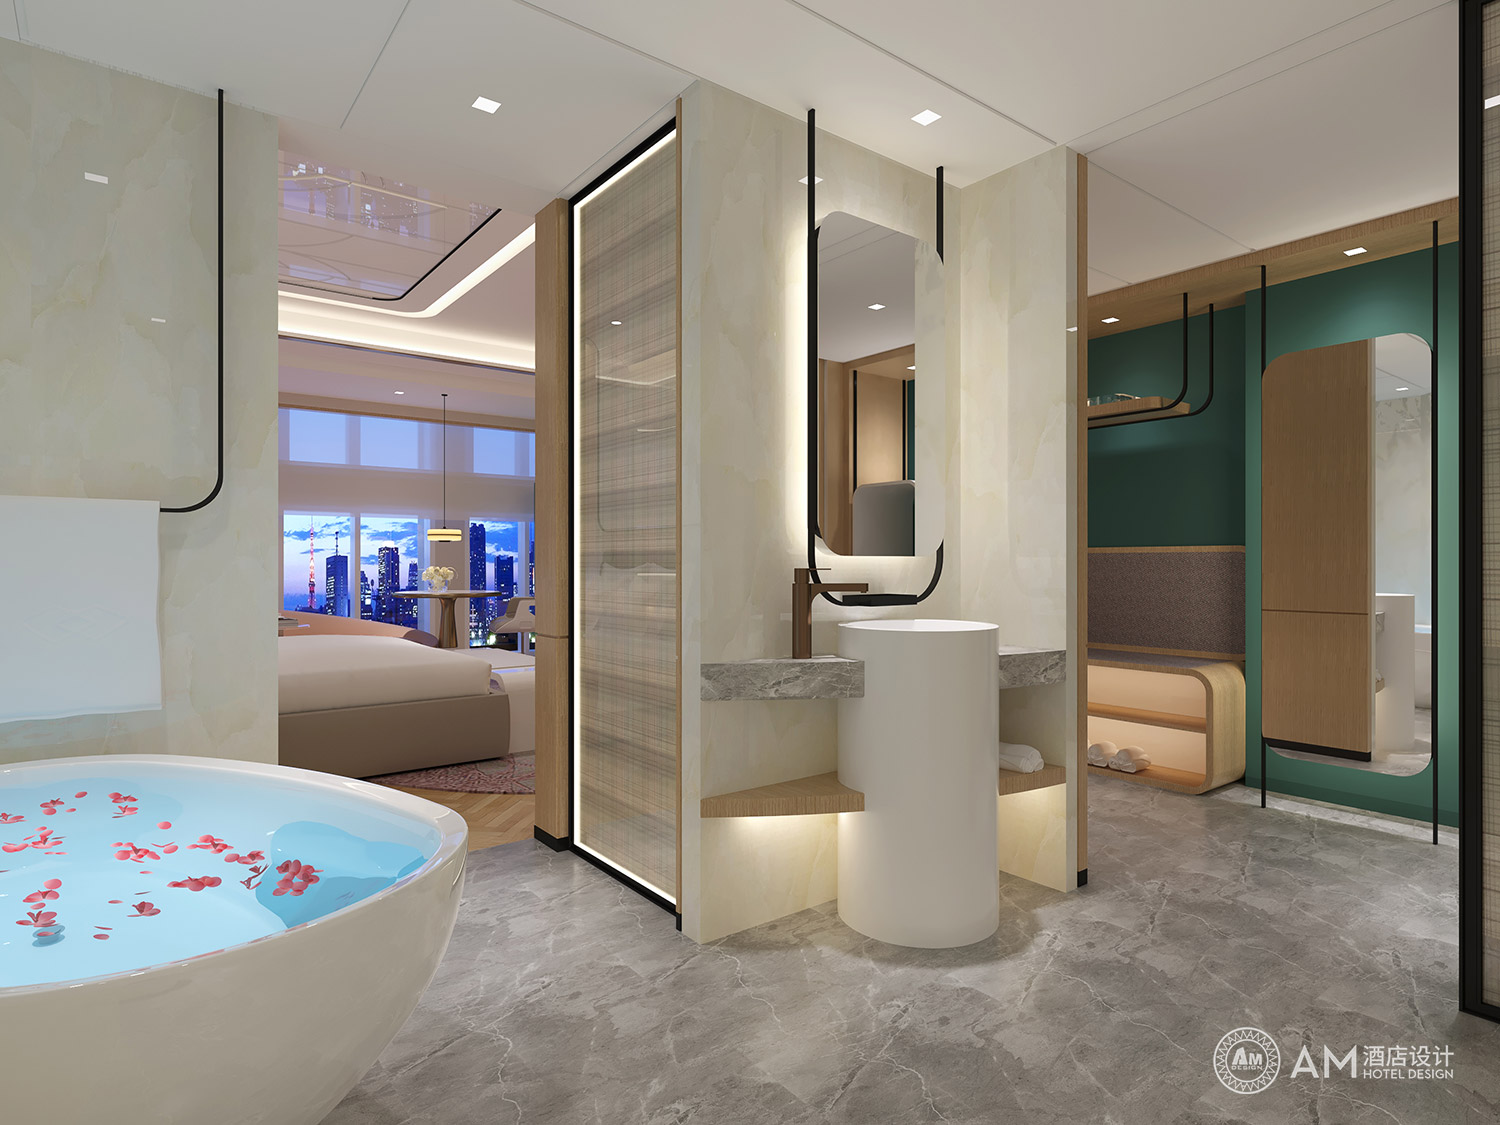 AM设计 | 西安悦莅酒店客房卫生间设计